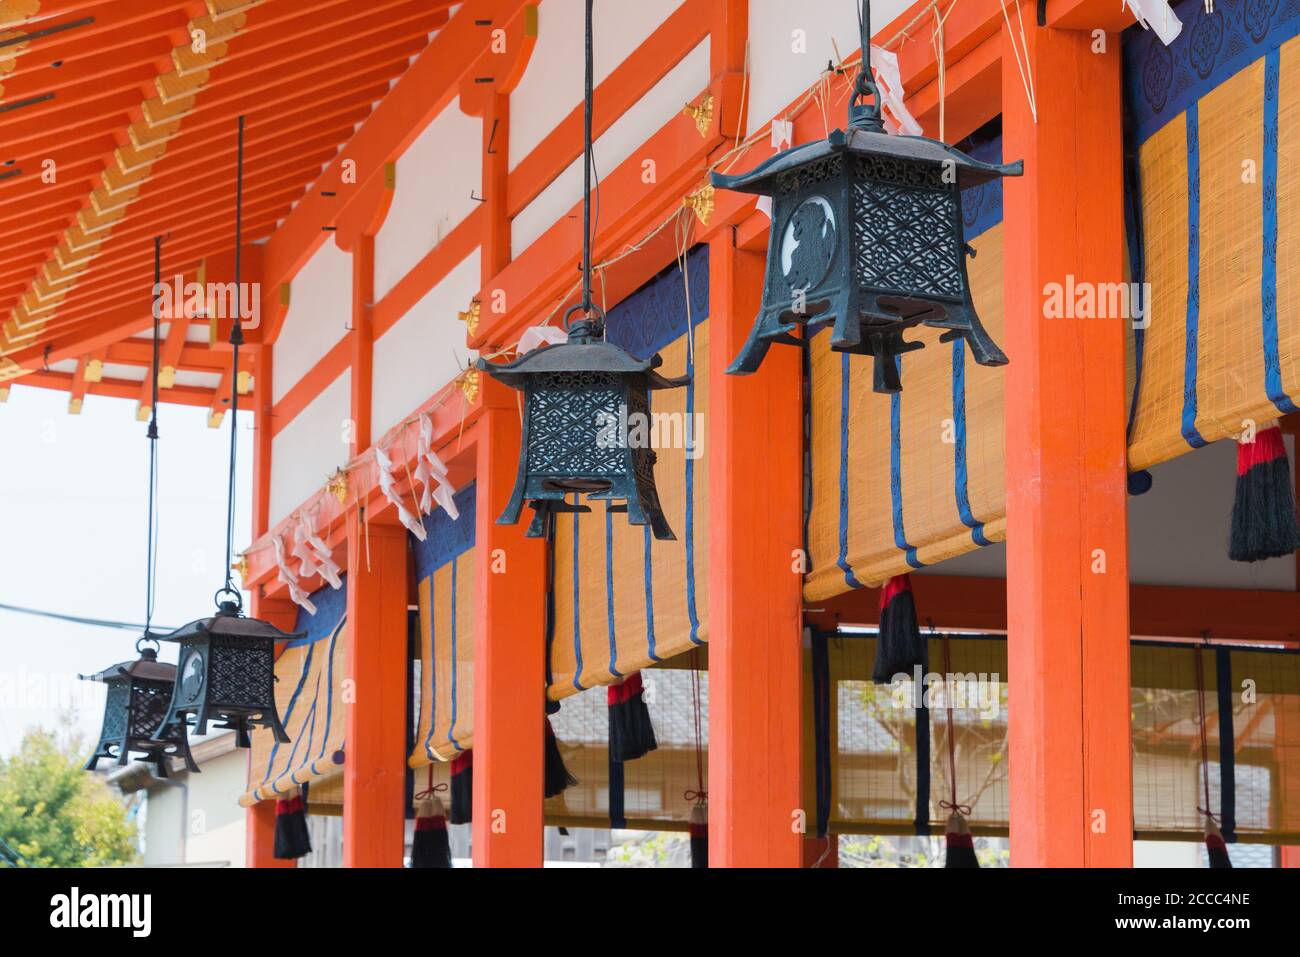 Kyoto, Japan - Fushimi Inari-taisha Shrine in Fushimi, Kyoto, Japan. Stock Photo